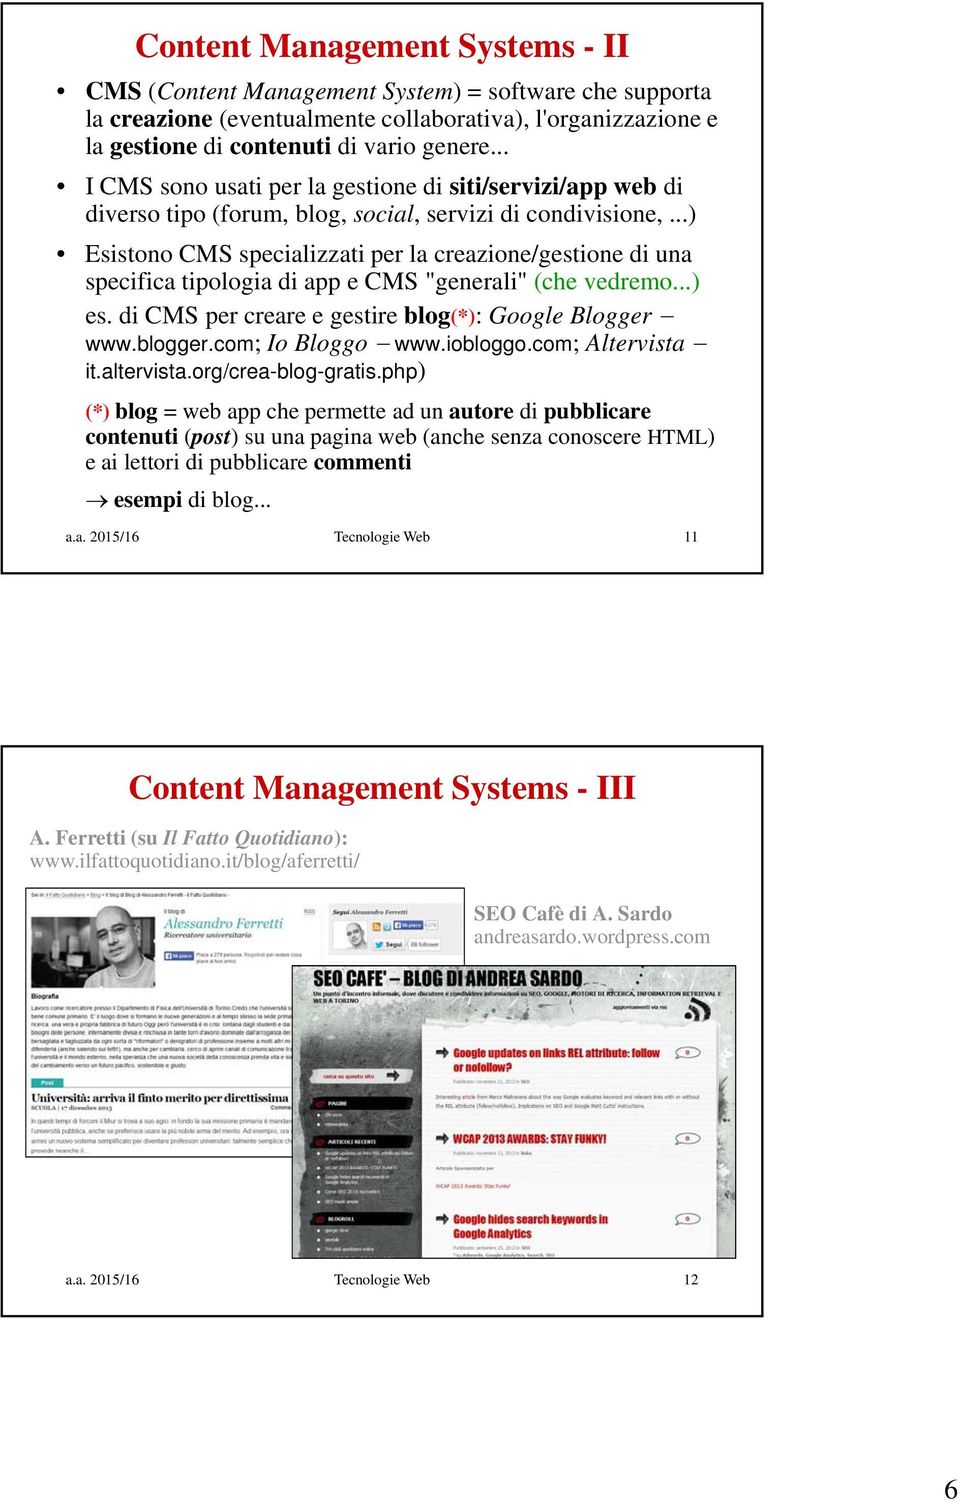 ..) Esistono CMS specializzati per la creazione/gestione di una specifica tipologia di app e CMS "generali" (che vedremo...) es. di CMS per creare e gestire blog(*): Google Blogger www.blogger.